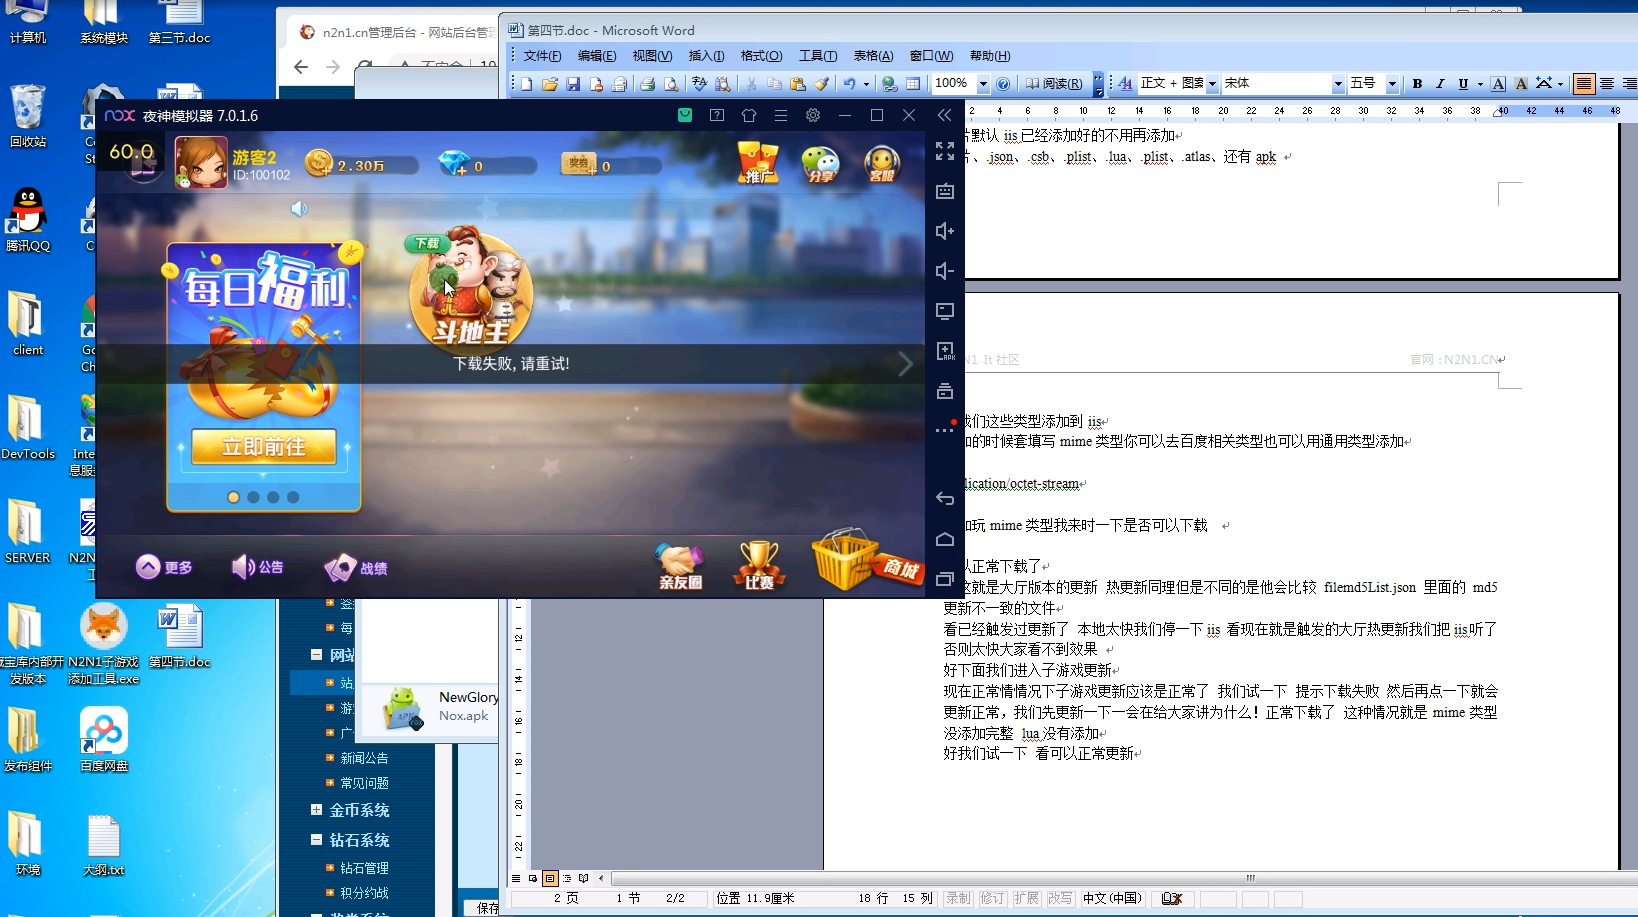 网狐旗舰从0开始第4节版本大厅子游戏热更新详细配置教程插图